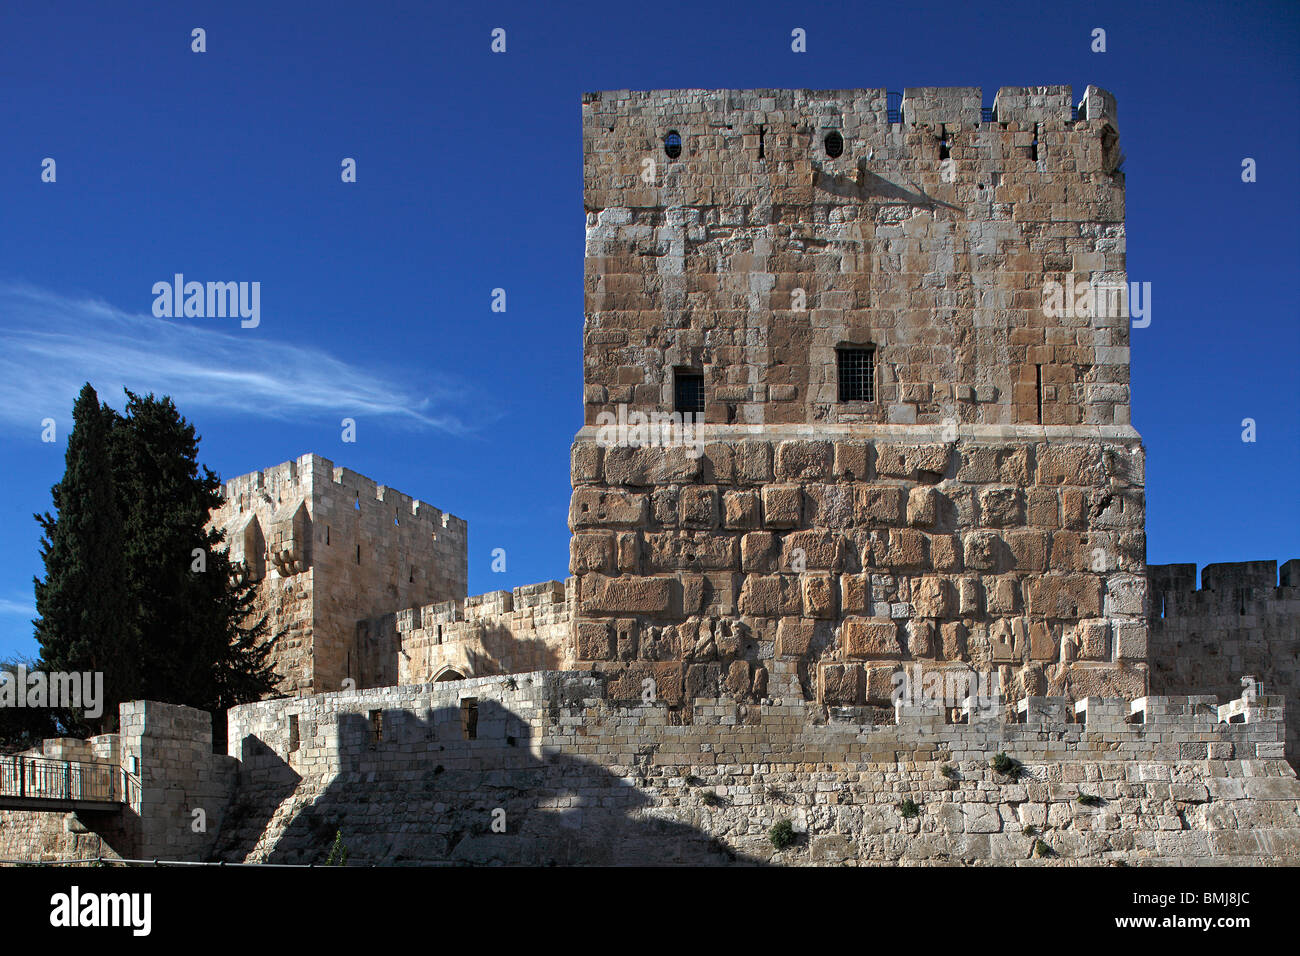 Israël, Jérusalem, vieille ville, citadelle,la Tour de David Banque D'Images